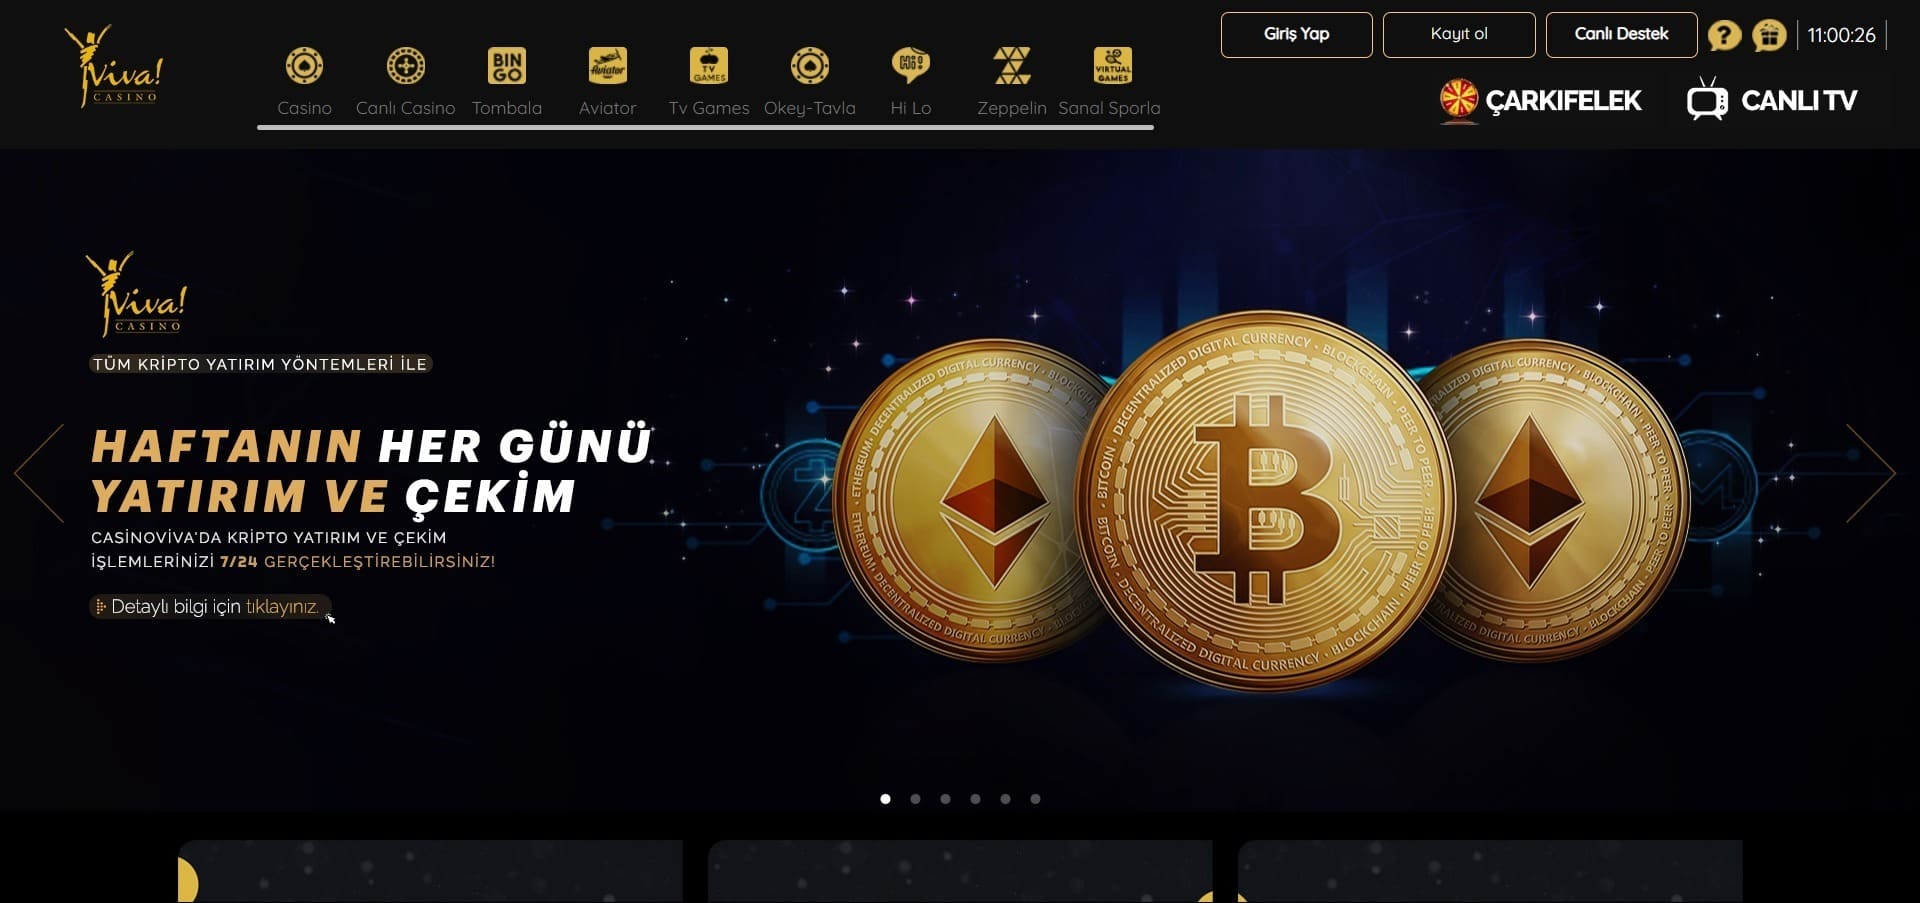 Casino Viva'nun resmi web sitesi